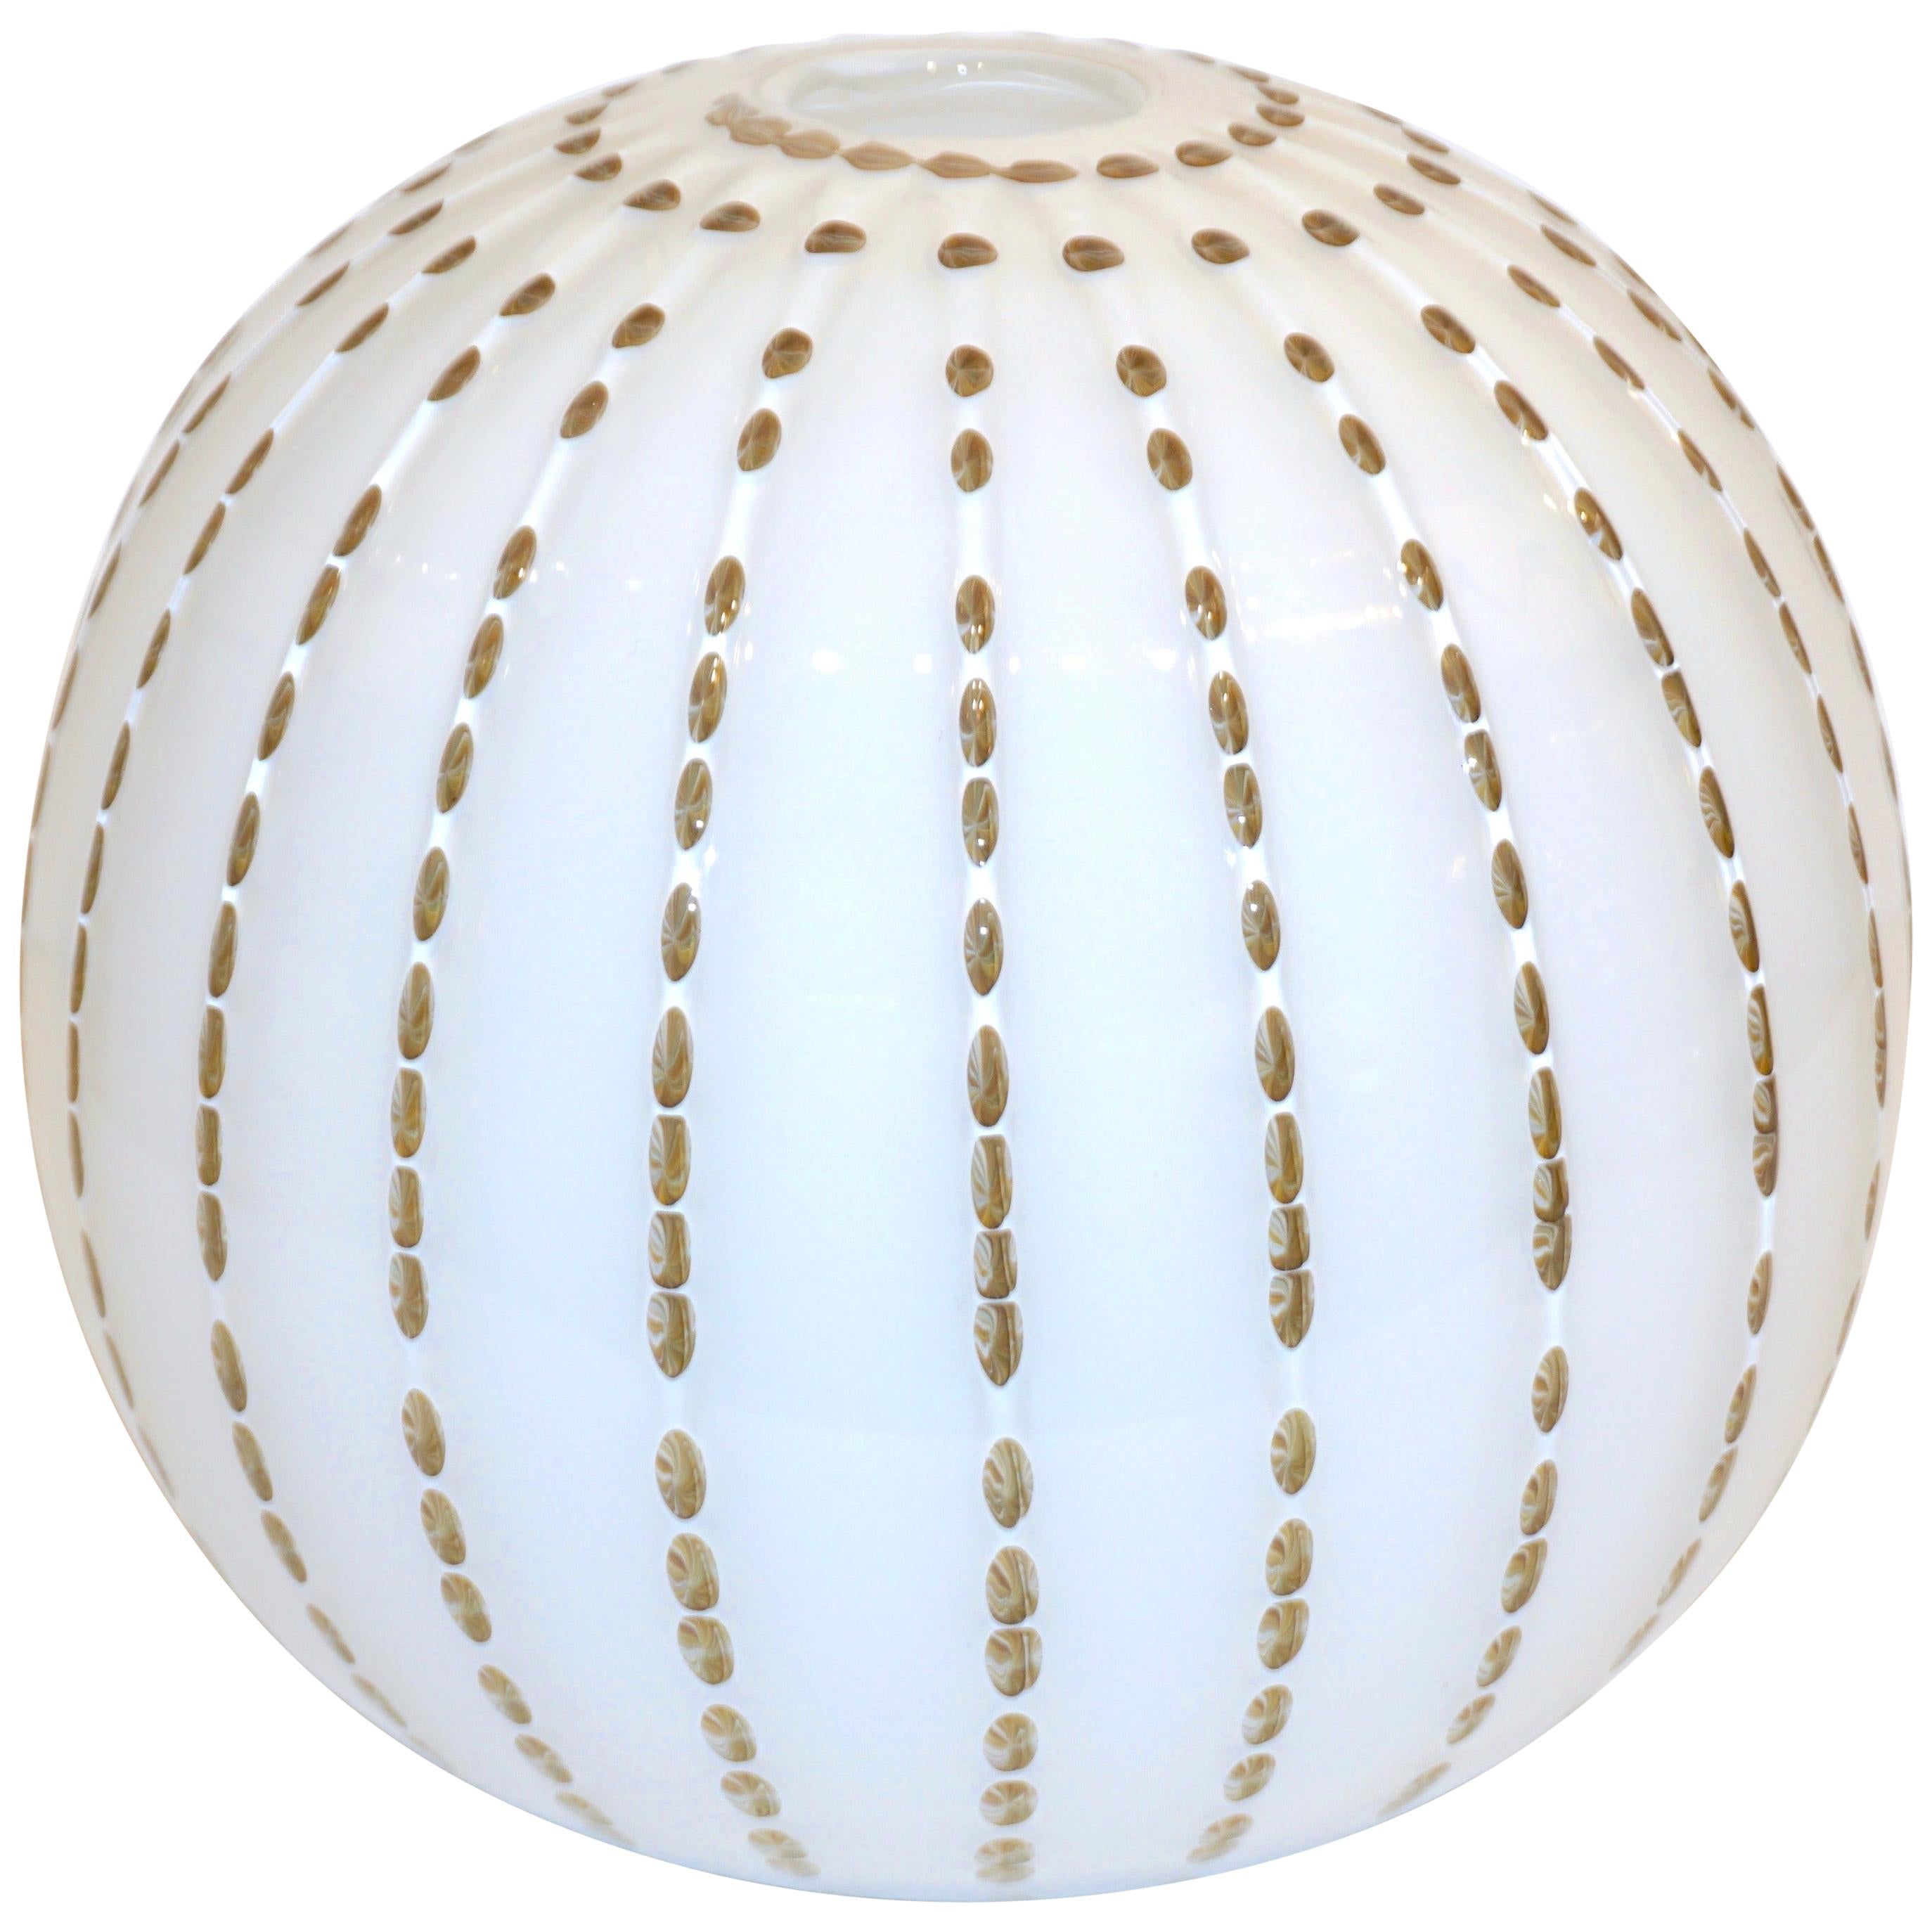 Paolo Crepax Italian White Murano Glass Modern Vase with Orange Dot Murrine